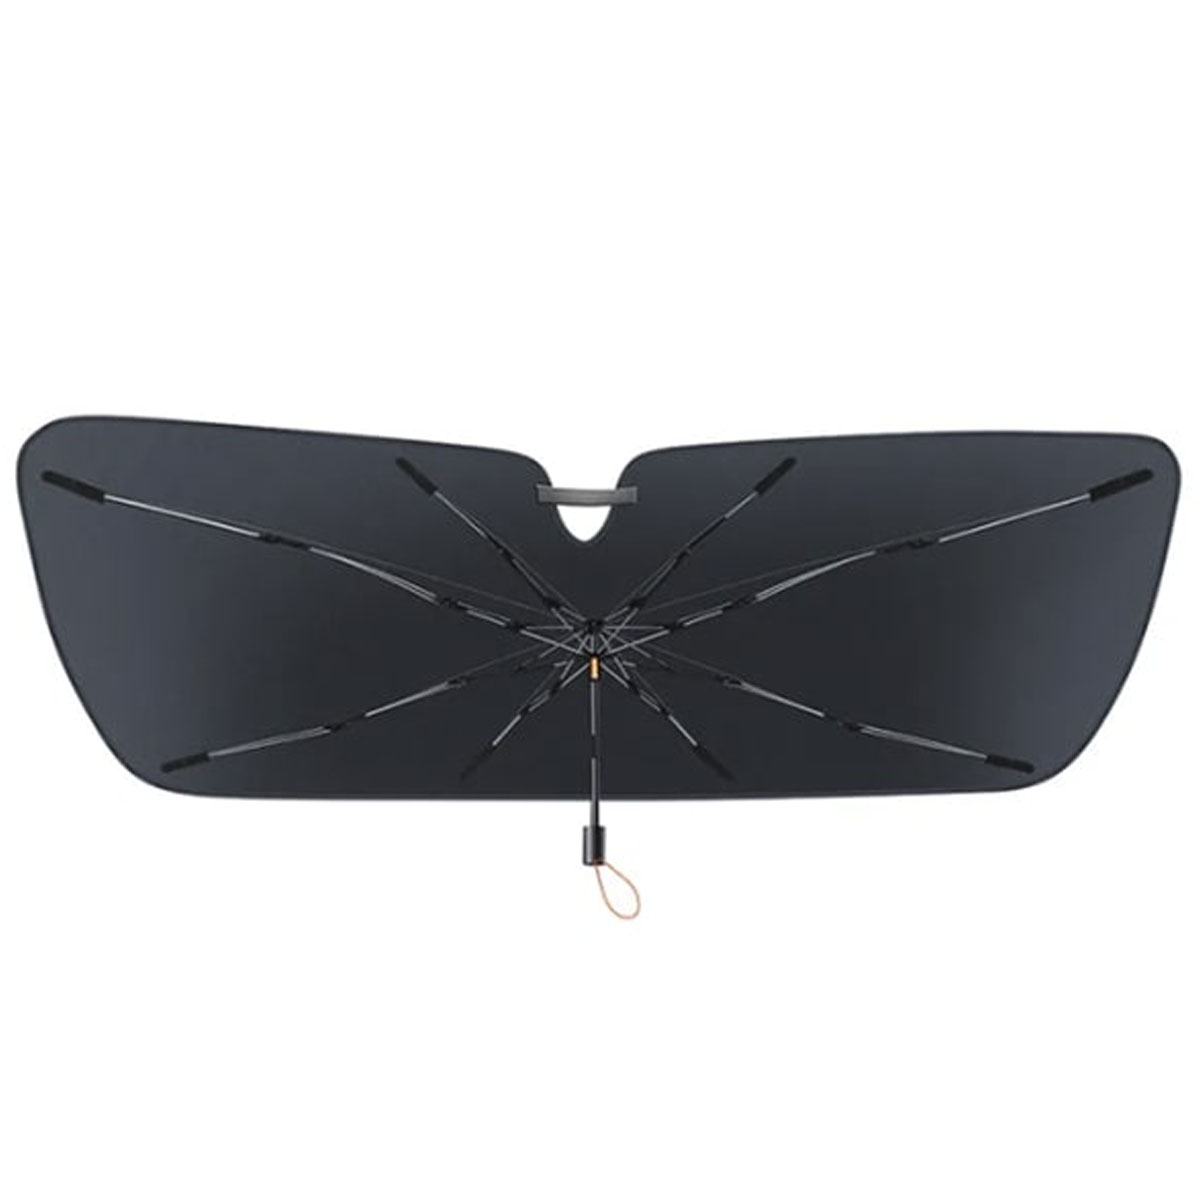 Солнцезащитный зонт BASEUS CoolRide Windshield Sun Shade Umbrella Lite для лобового стекла автомобиля, размер (131 x 69 см)